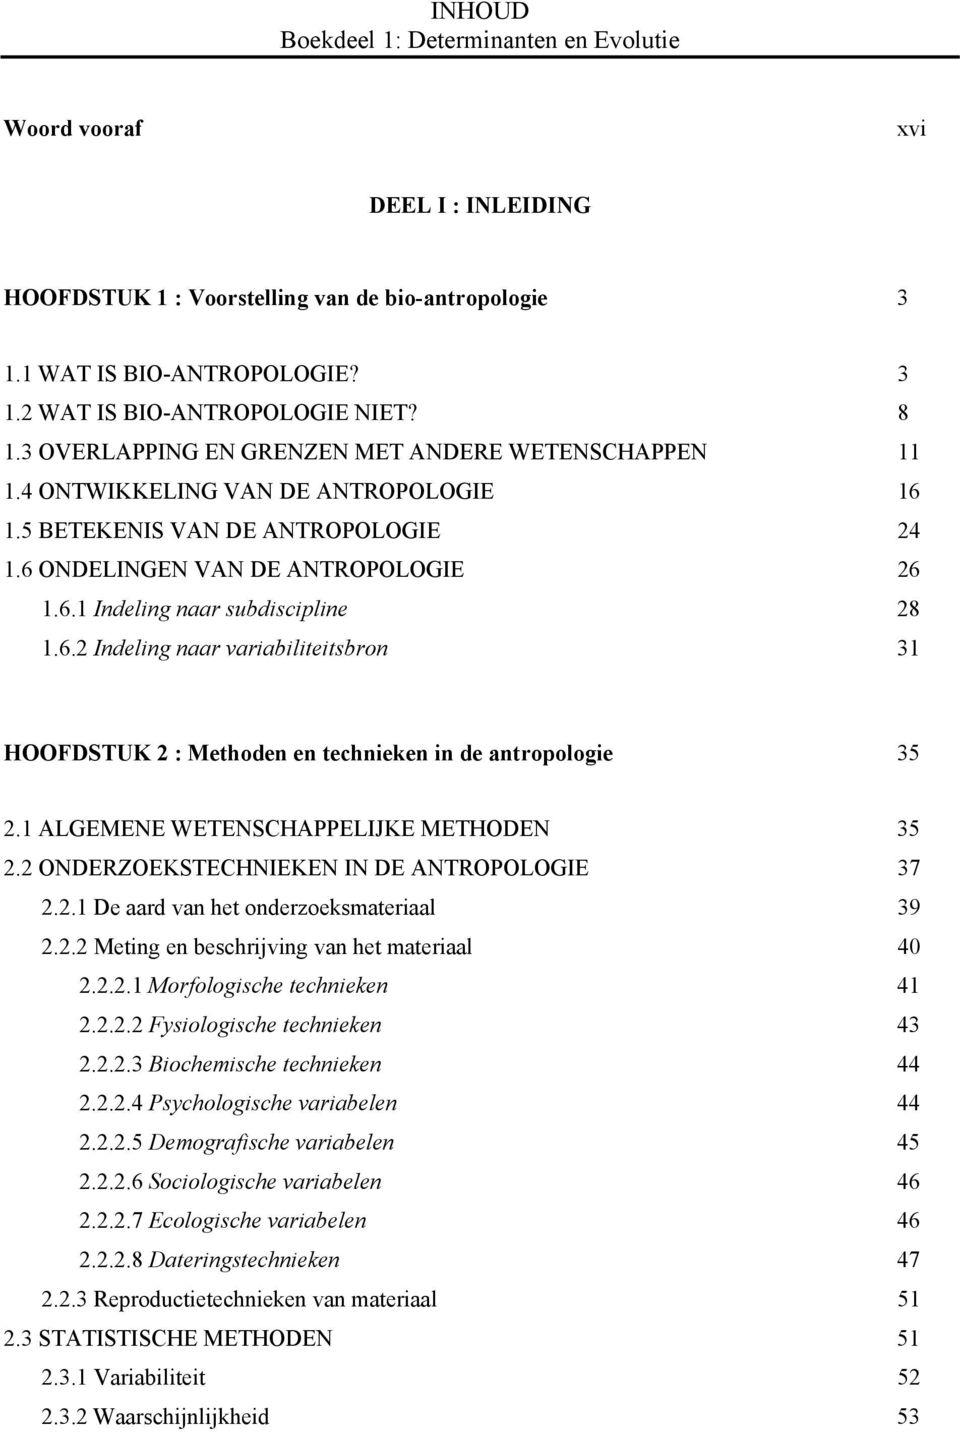 6.2 Indeling naar variabiliteitsbron 31 HOOFDSTUK 2 : Methoden en technieken in de antropologie 35 2.1 ALGEMENE WETENSCHAPPELIJKE METHODEN 35 2.2 ONDERZOEKSTECHNIEKEN IN DE ANTROPOLOGIE 37 2.2.1 De aard van het onderzoeksmateriaal 39 2.